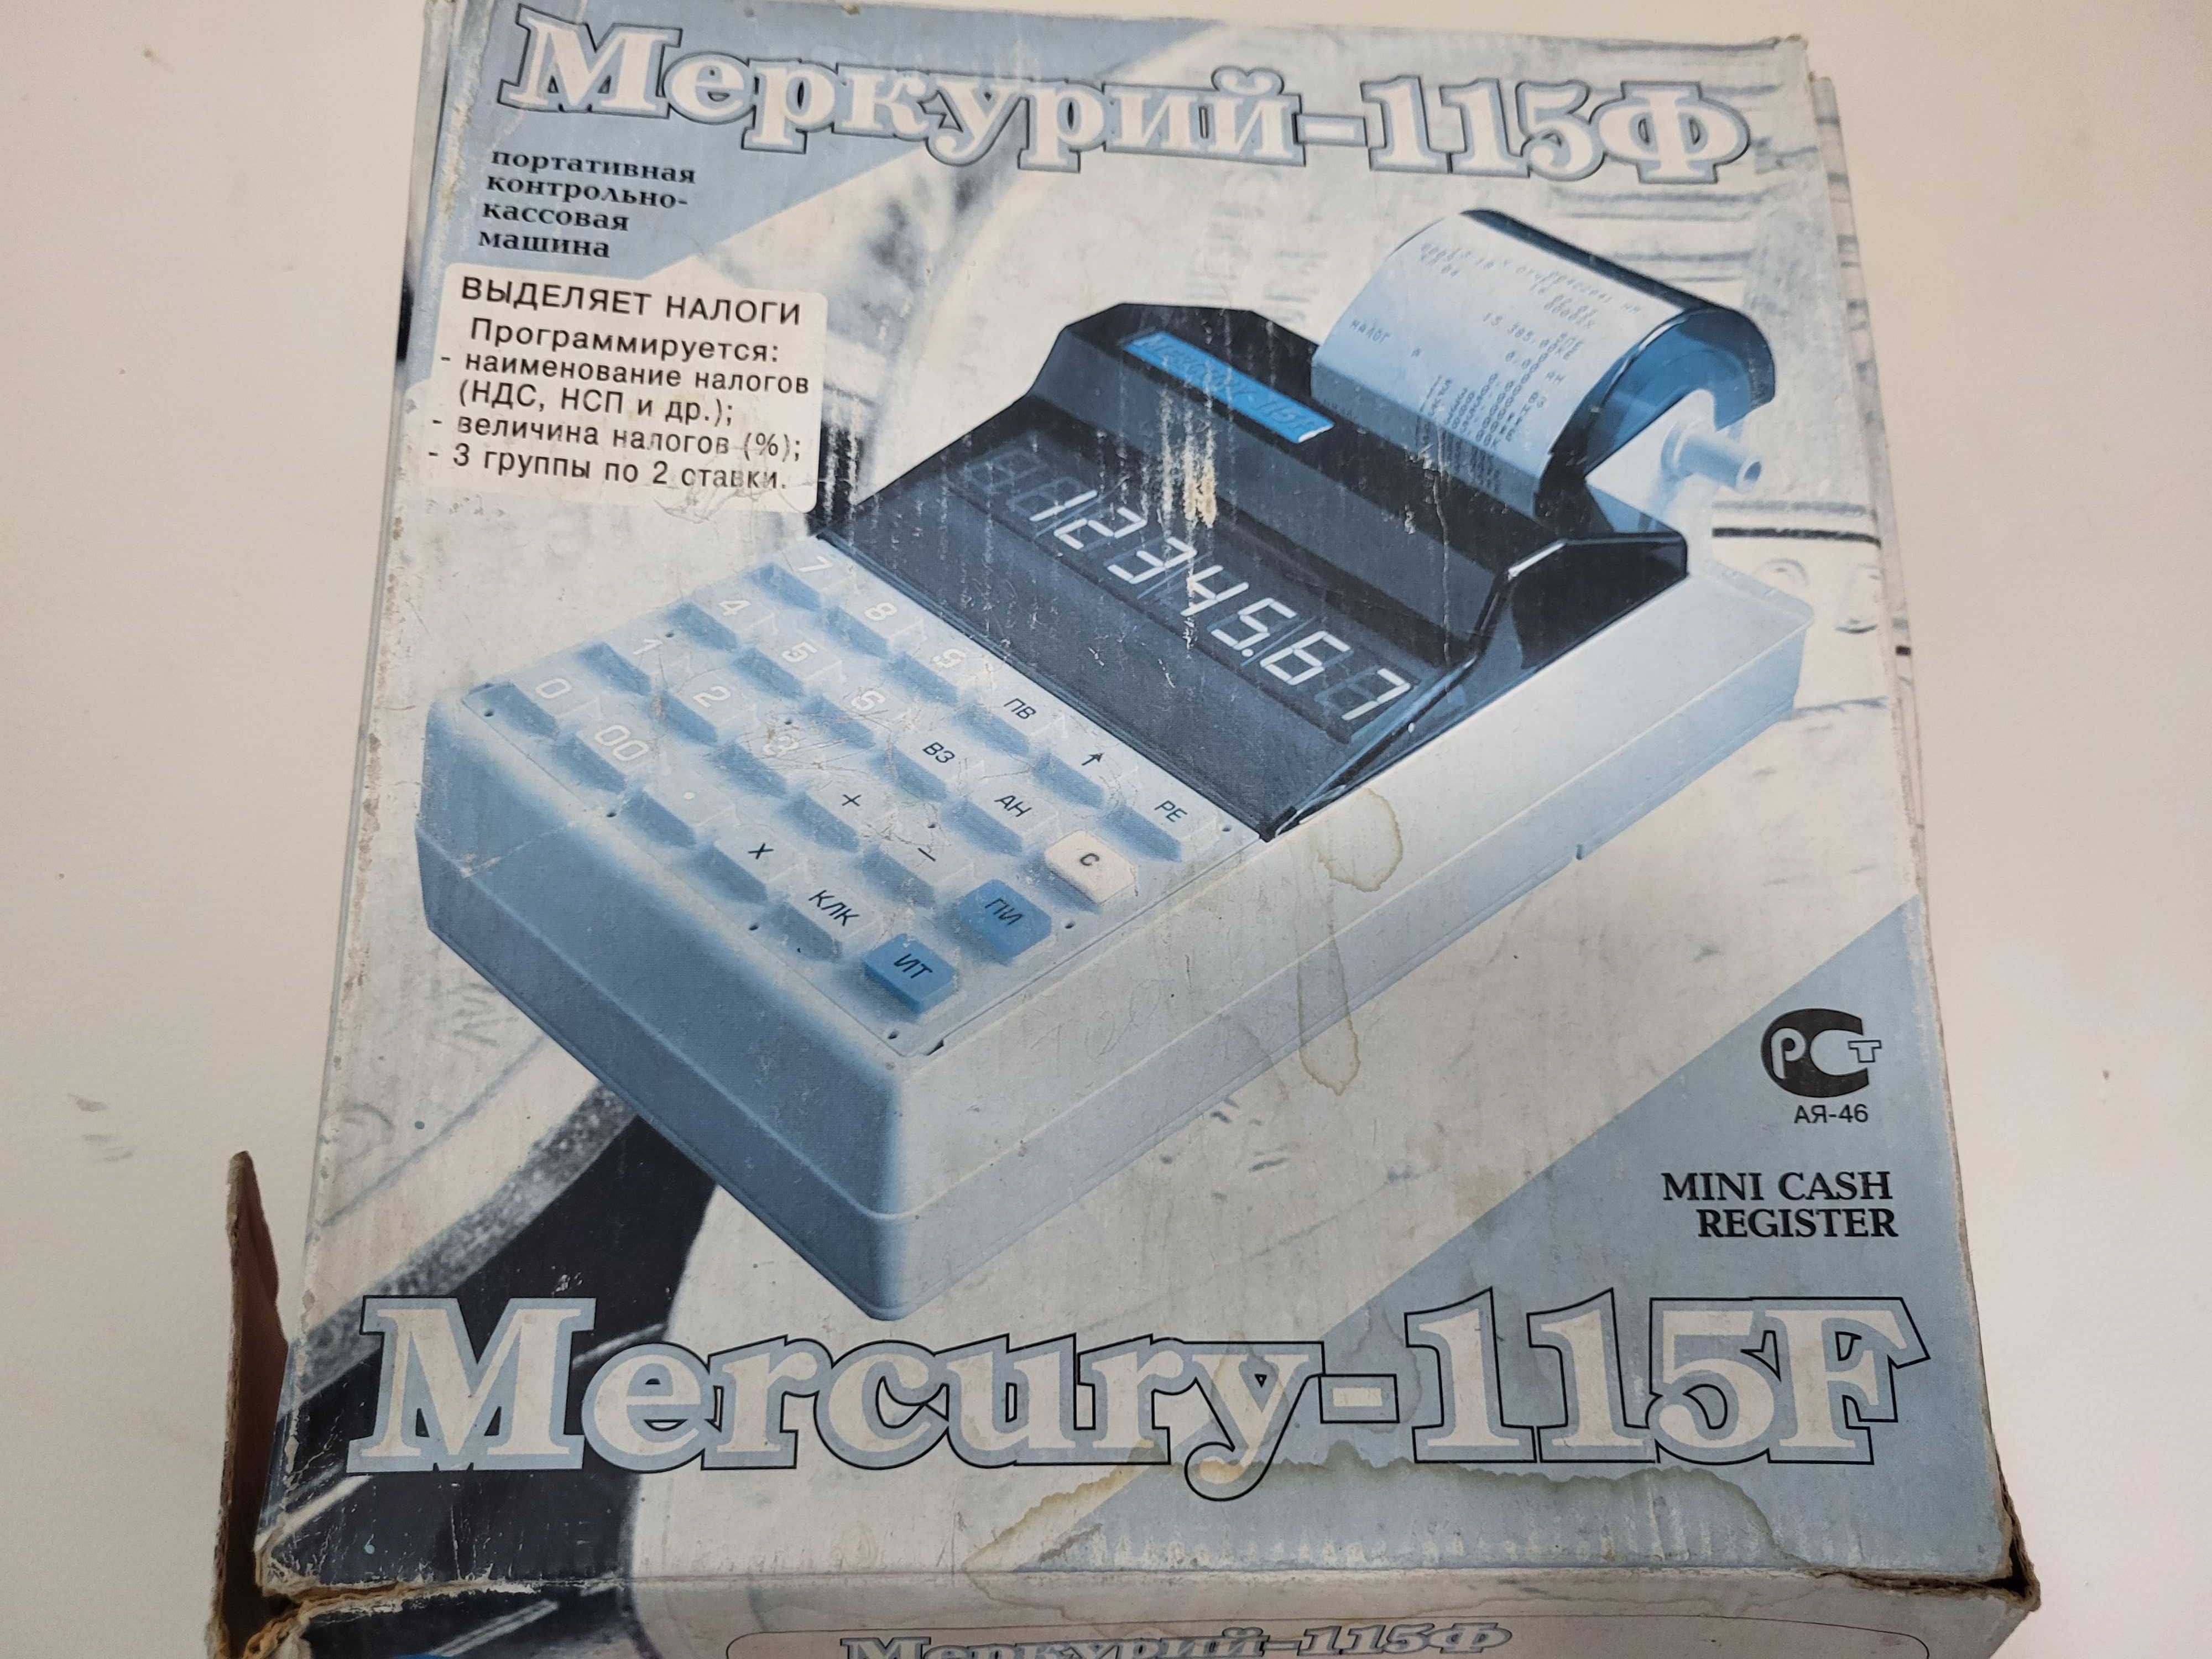 Продам портативную контрольно-кассовую машину Меркурий - 115Ф